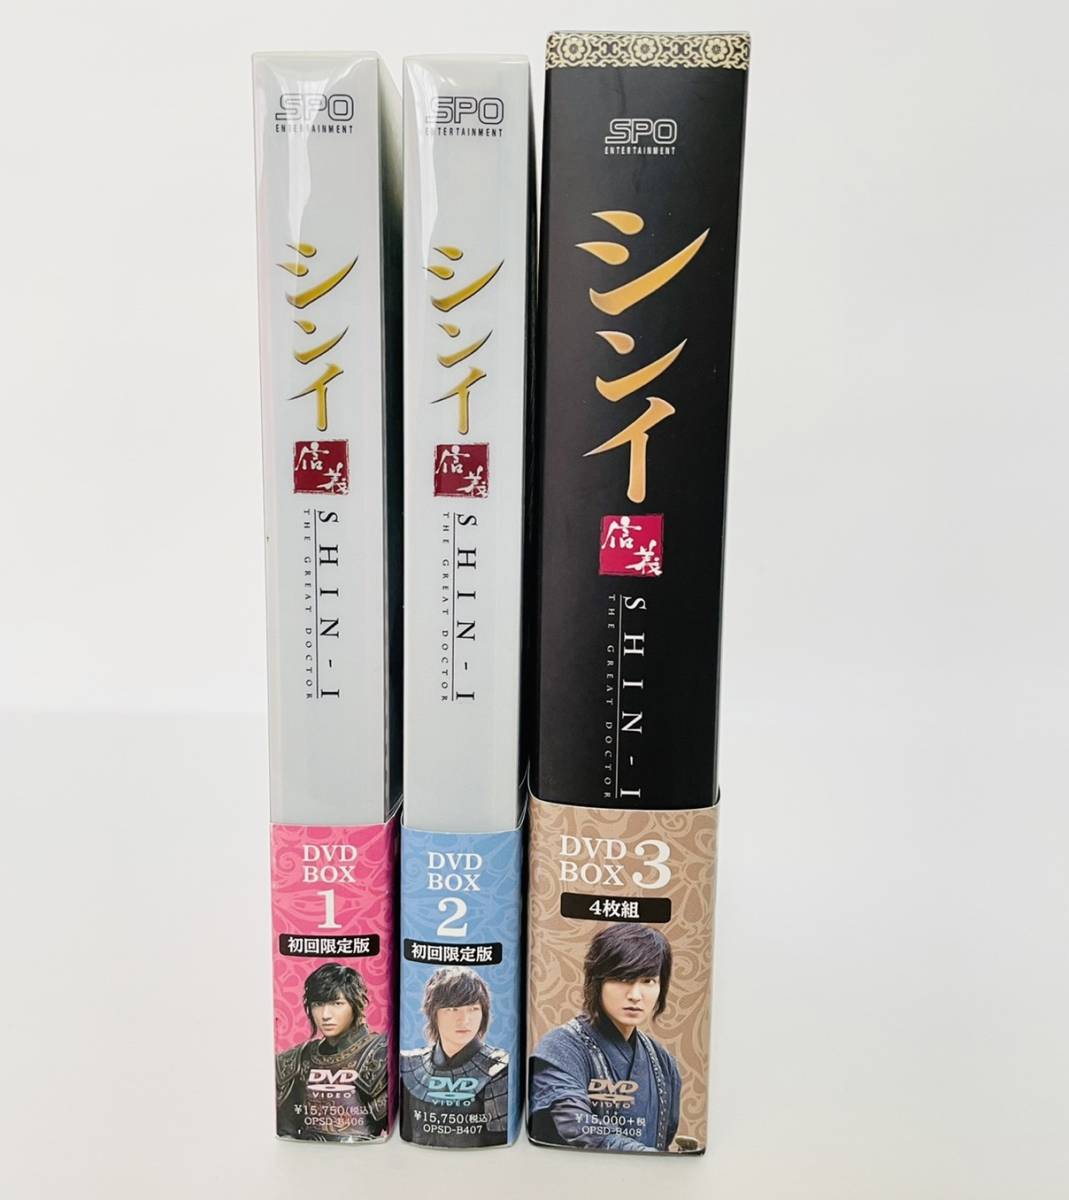 シンイ-信義- DVD-BOX1,2,3 全話セット 初回限定